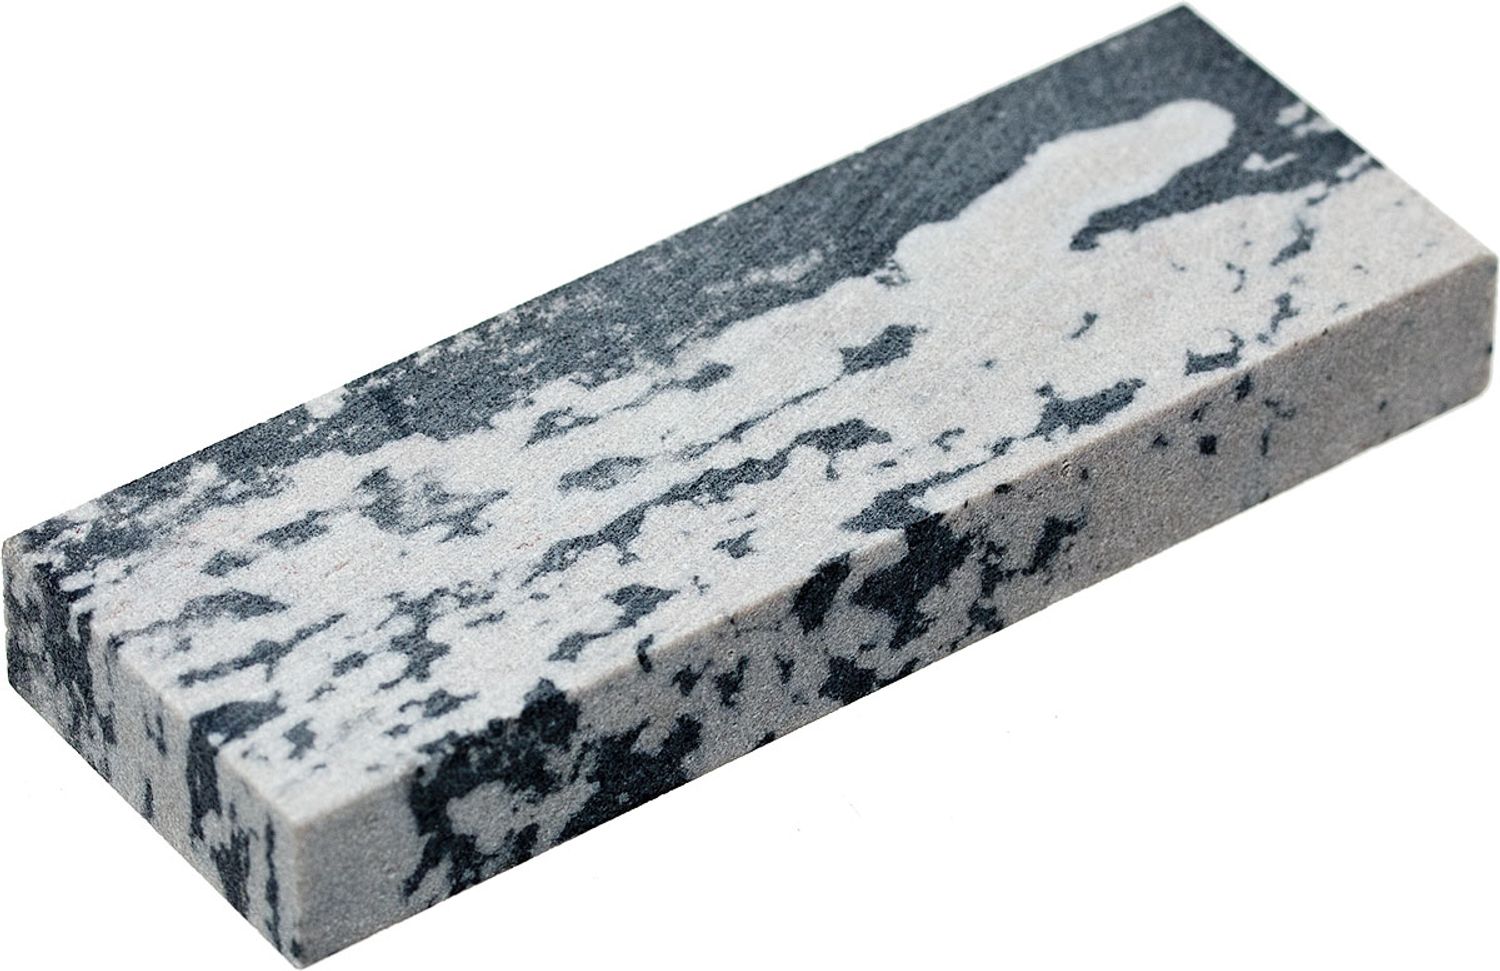 Dan's Whetstone Genuine Arkansas Pocket Stone, Medium Grit 3 x 1 (MAP-13)  - KnifeCenter